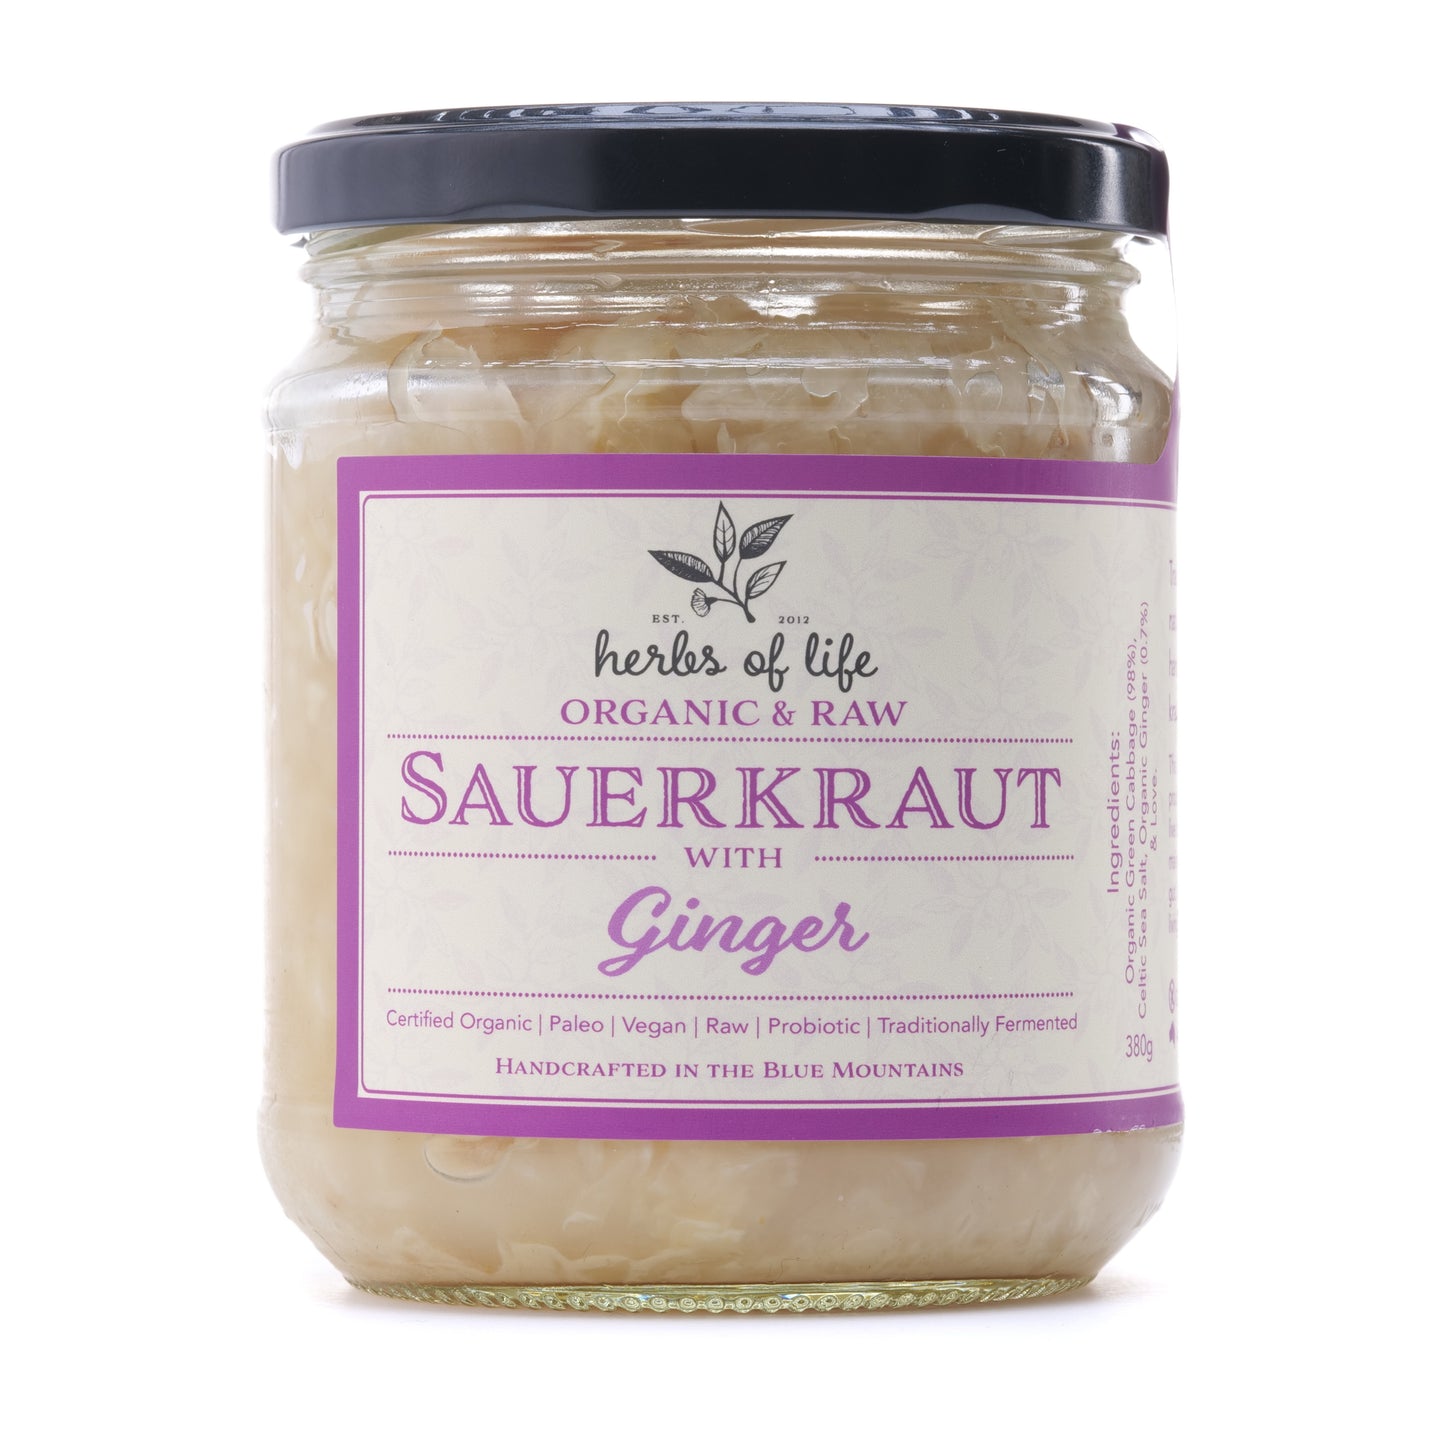 Green Cabbage Sauerkraut with Ginger